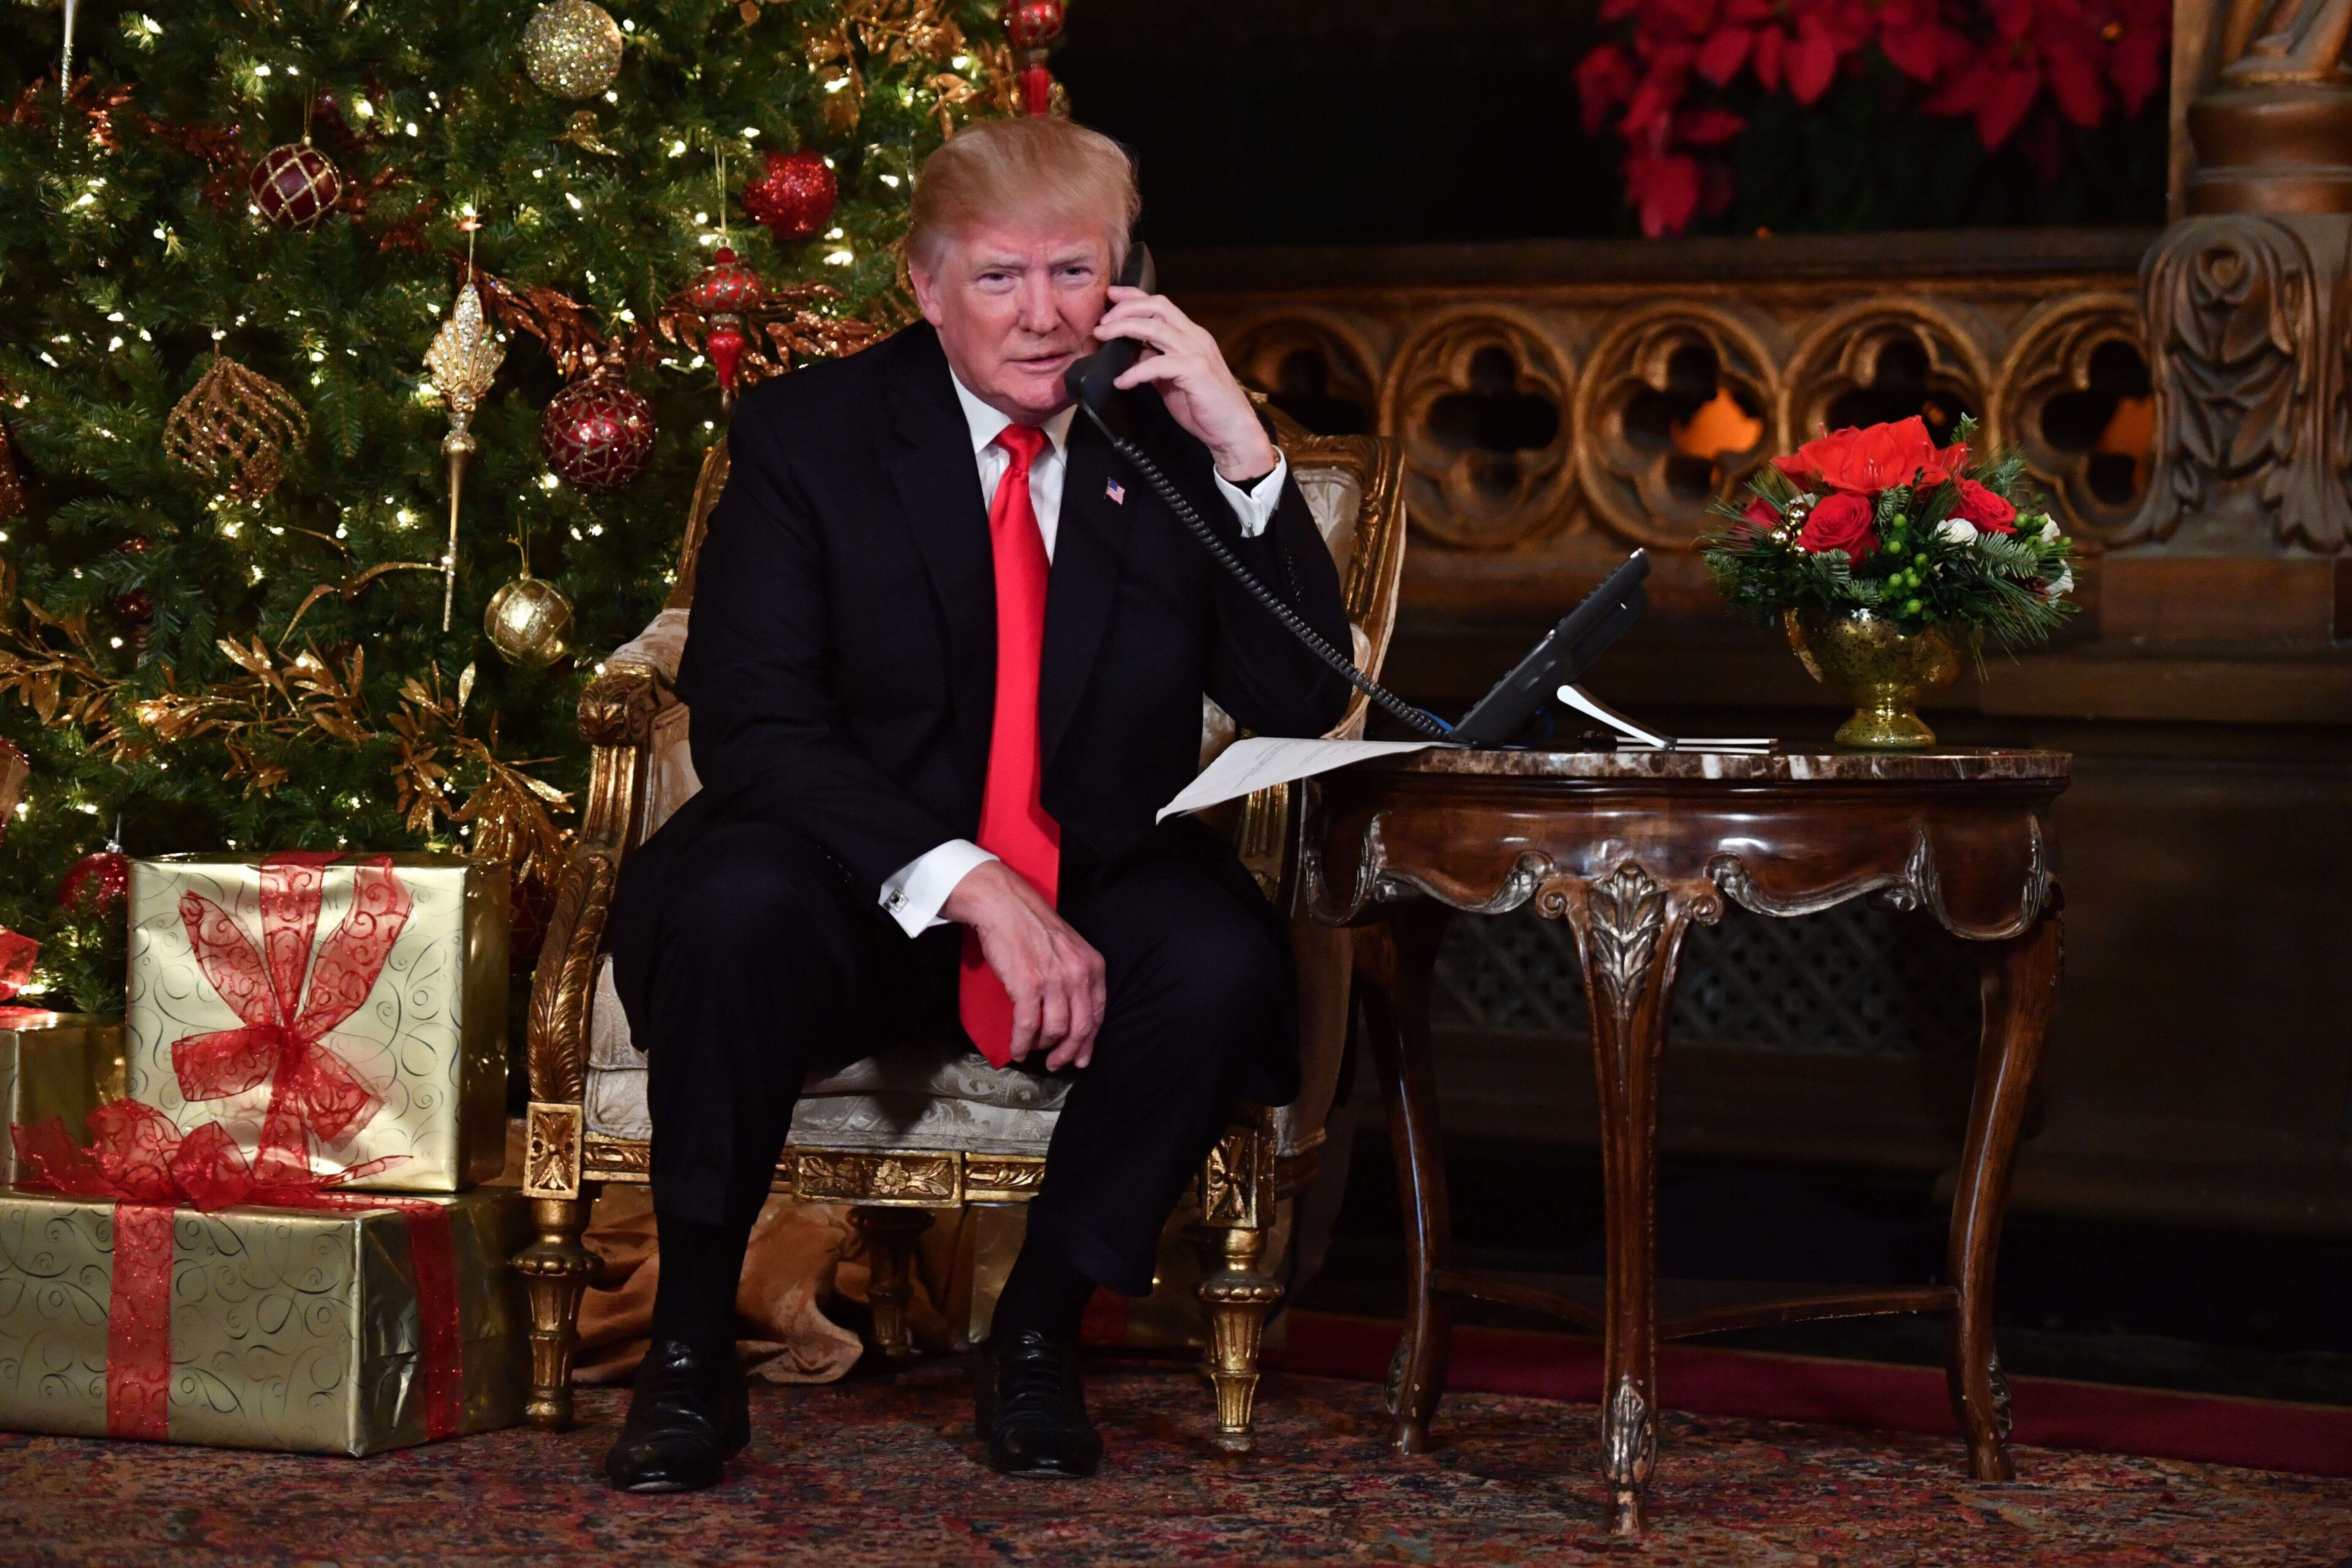 La retranscription de l'appel entre Trump et Zelensky est incomplète selon un haut-gradé témoignant au Congrès (photo d'illustration de Donald Trump au téléphone le 24 décembre 2017)